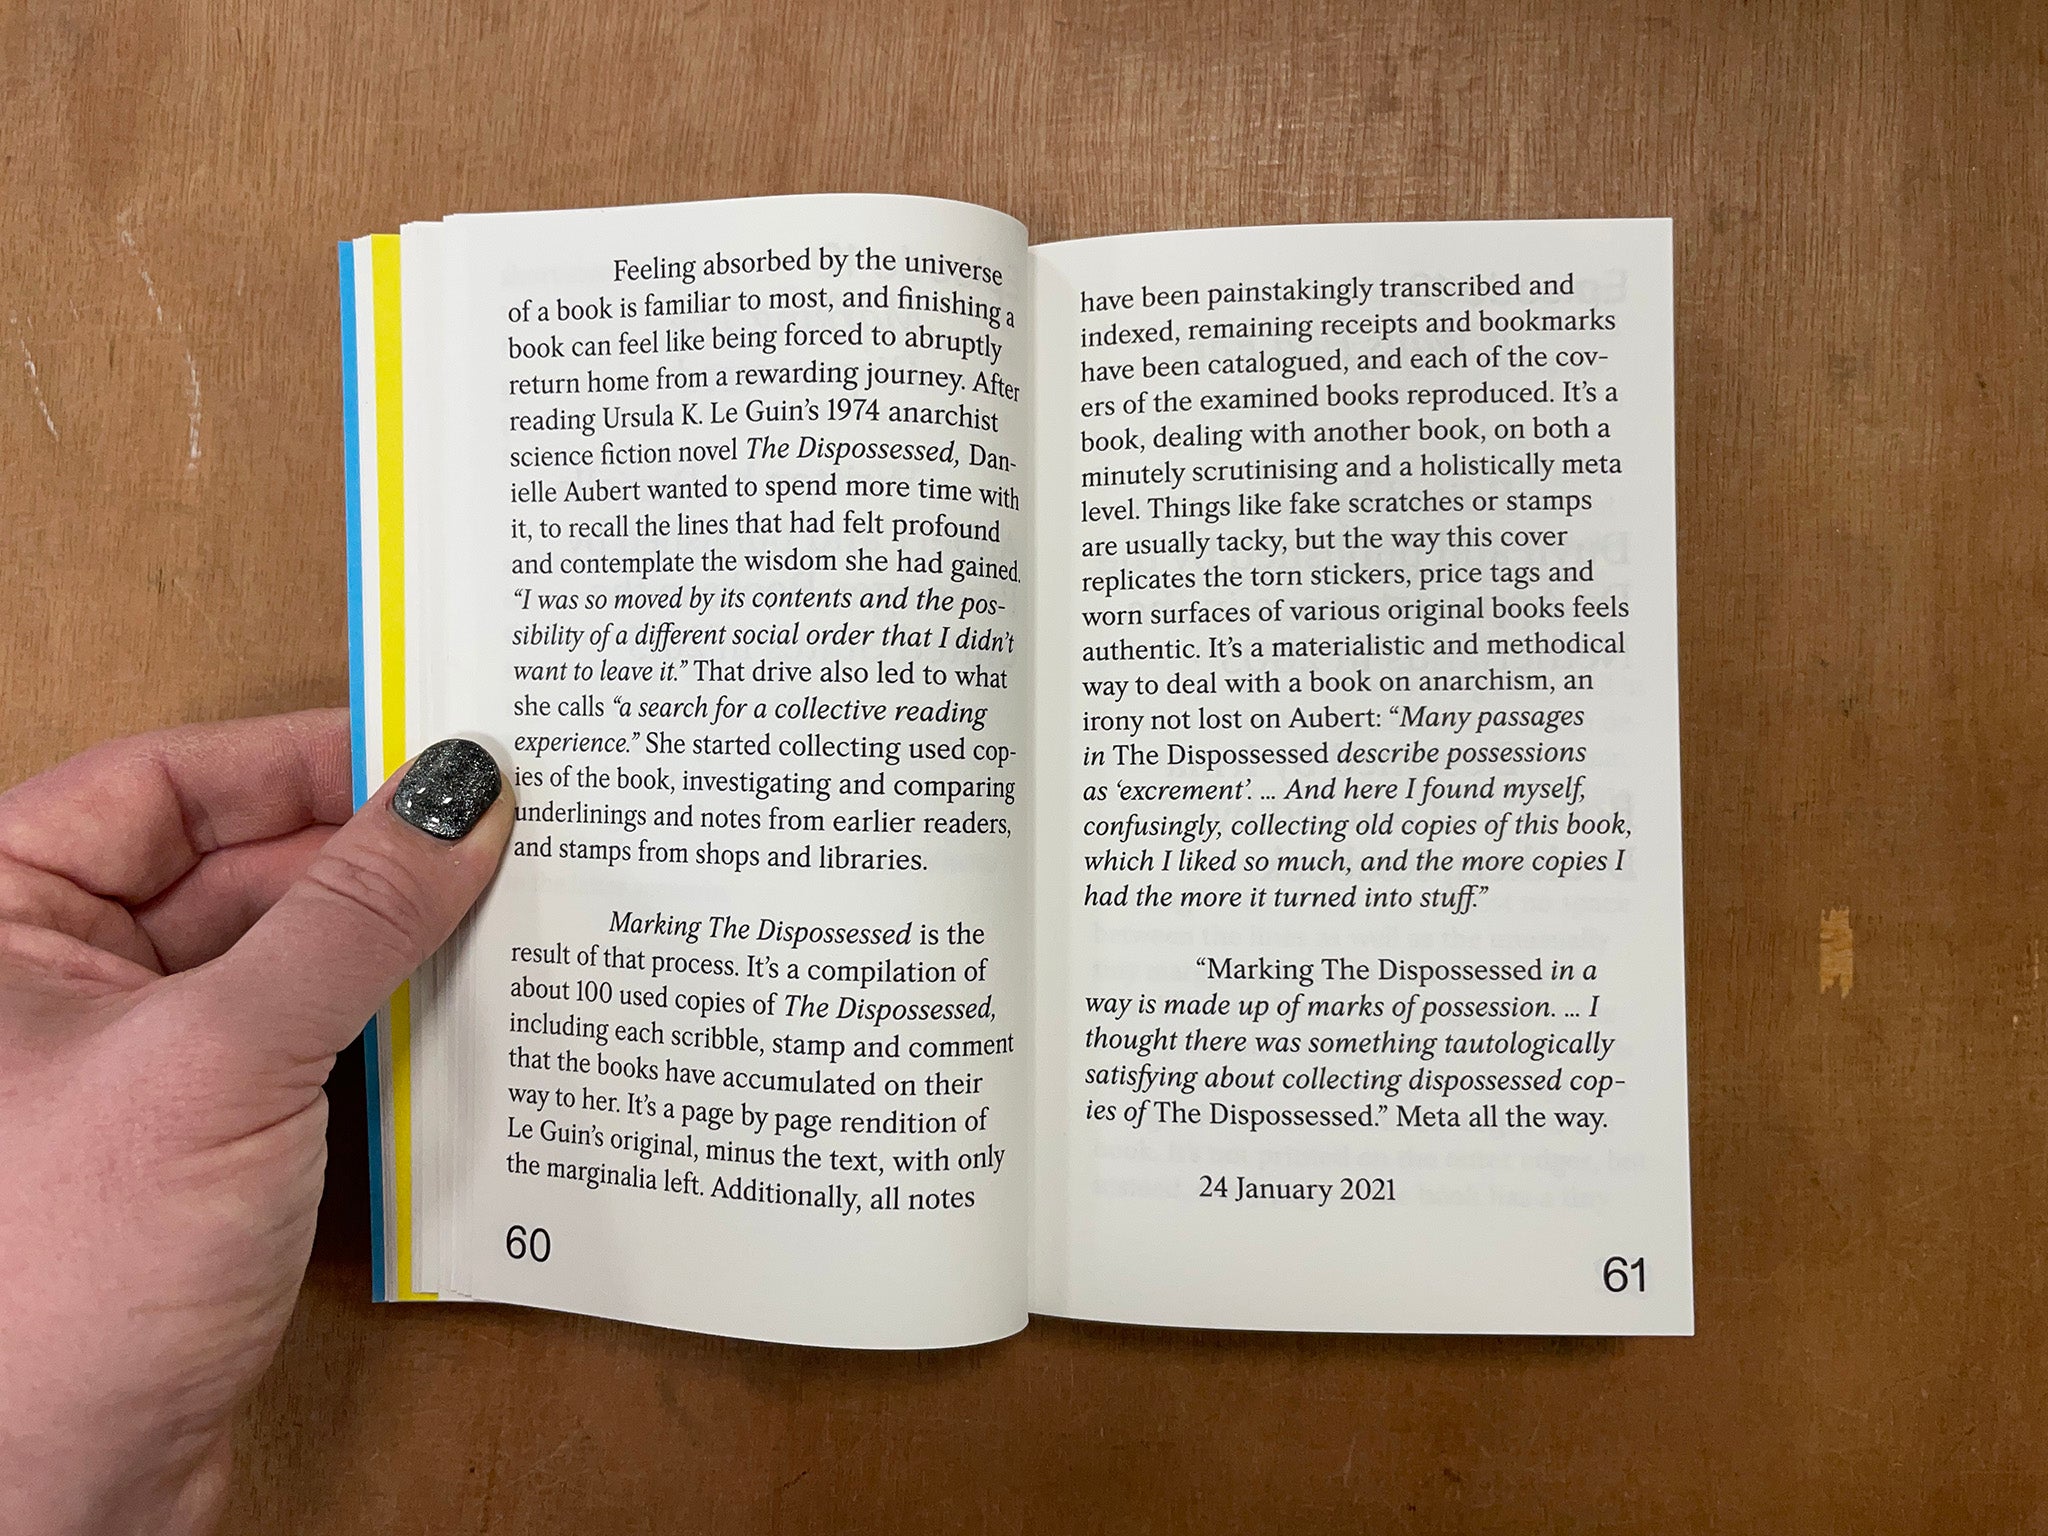 NOTES ON BOOK DESIGN by Siri Lee Lindskrog & Amanda-Li Kollberg